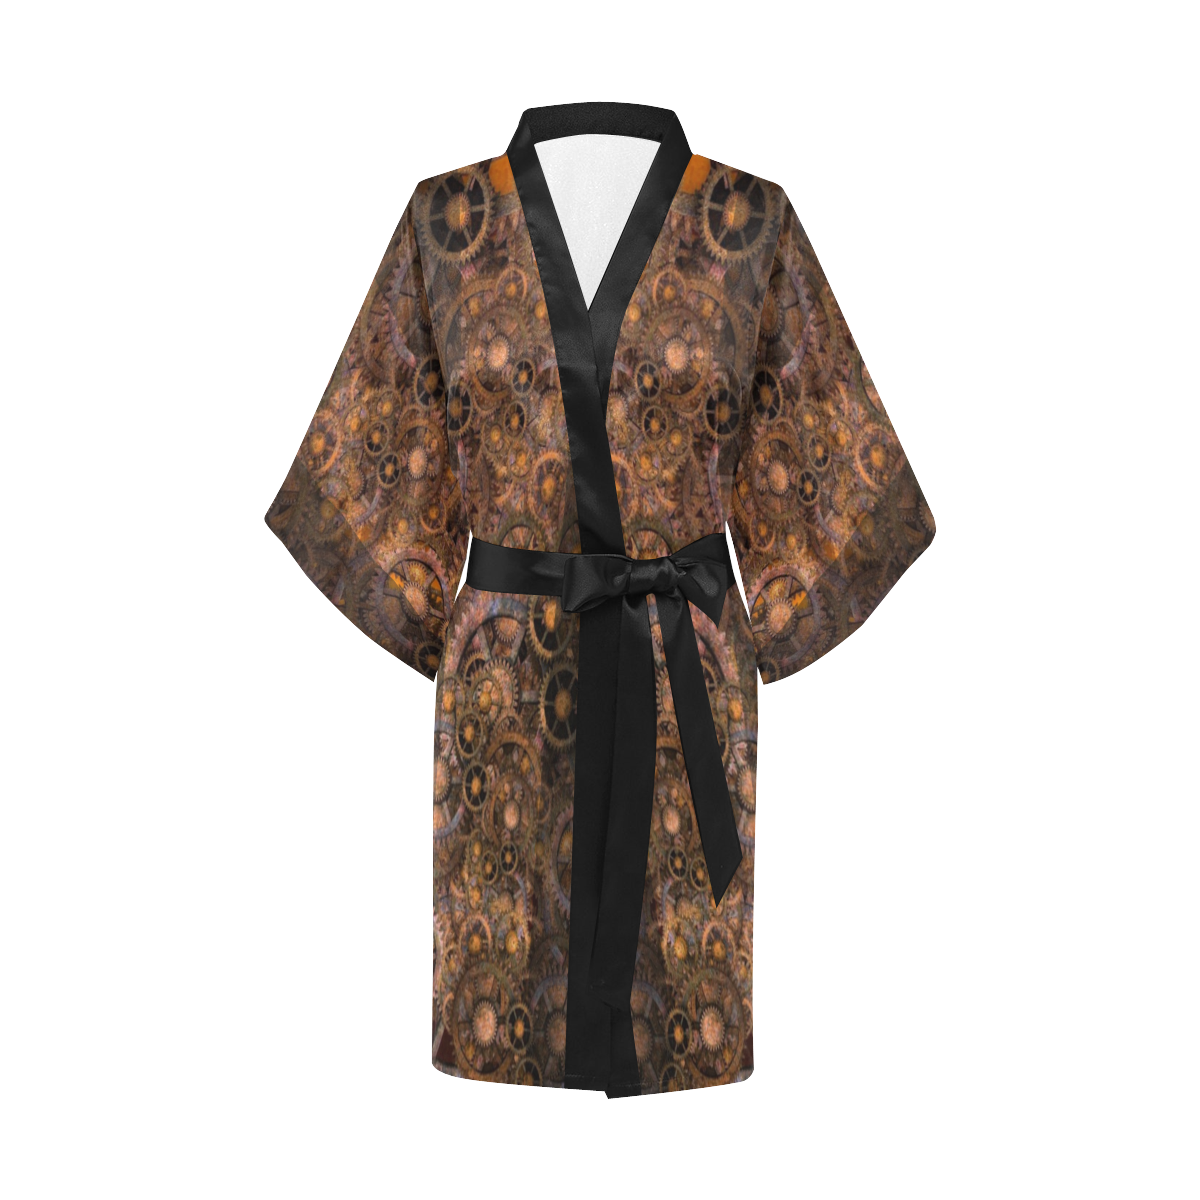 Steampunk Kimono Robe